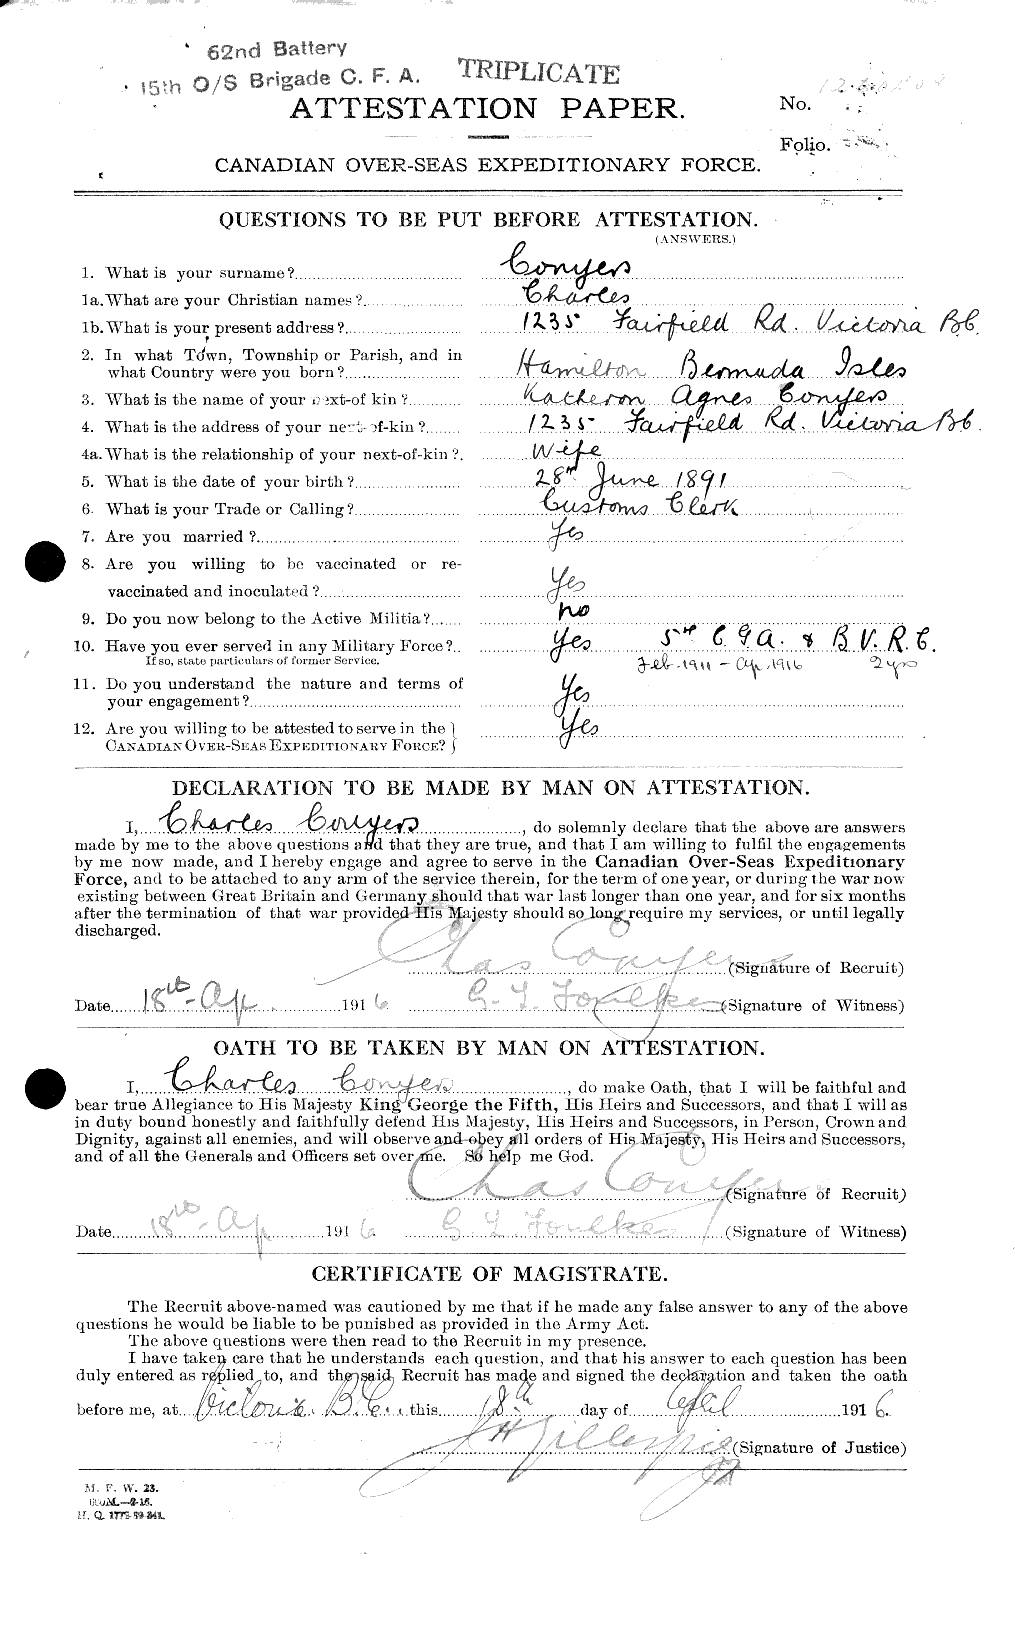 Dossiers du Personnel de la Première Guerre mondiale - CEC 038673a